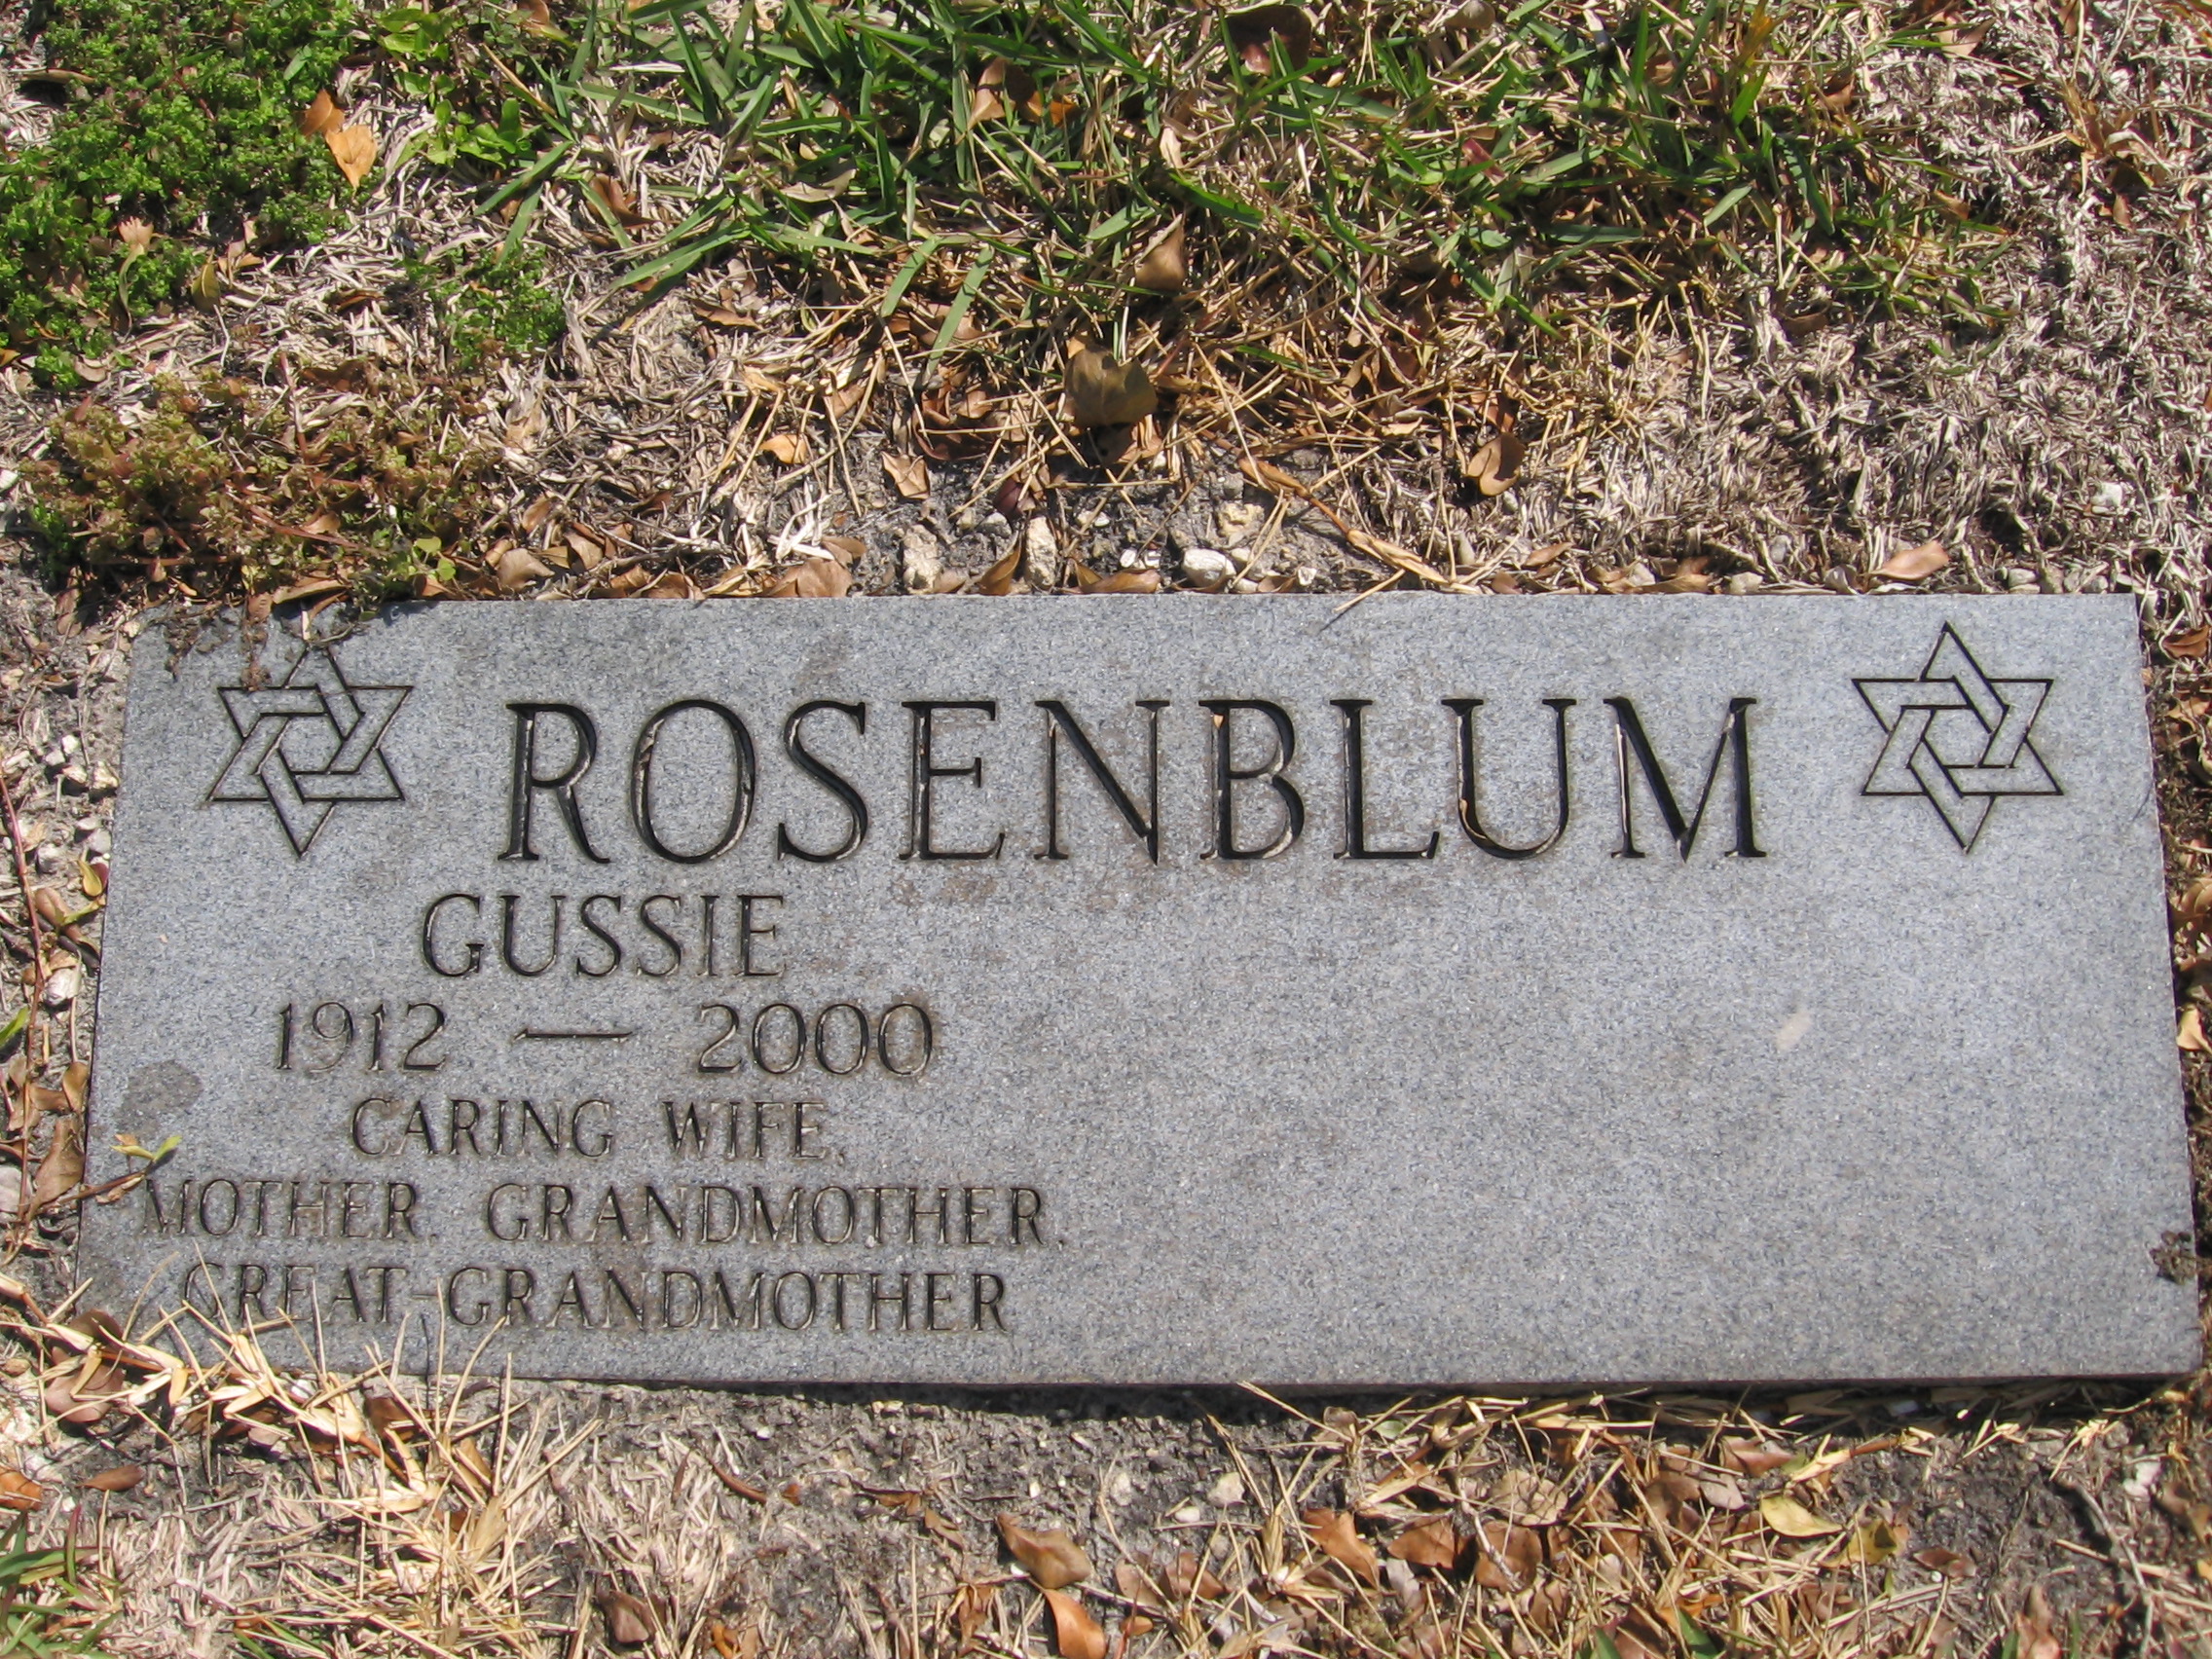 Gussie Rosenblum